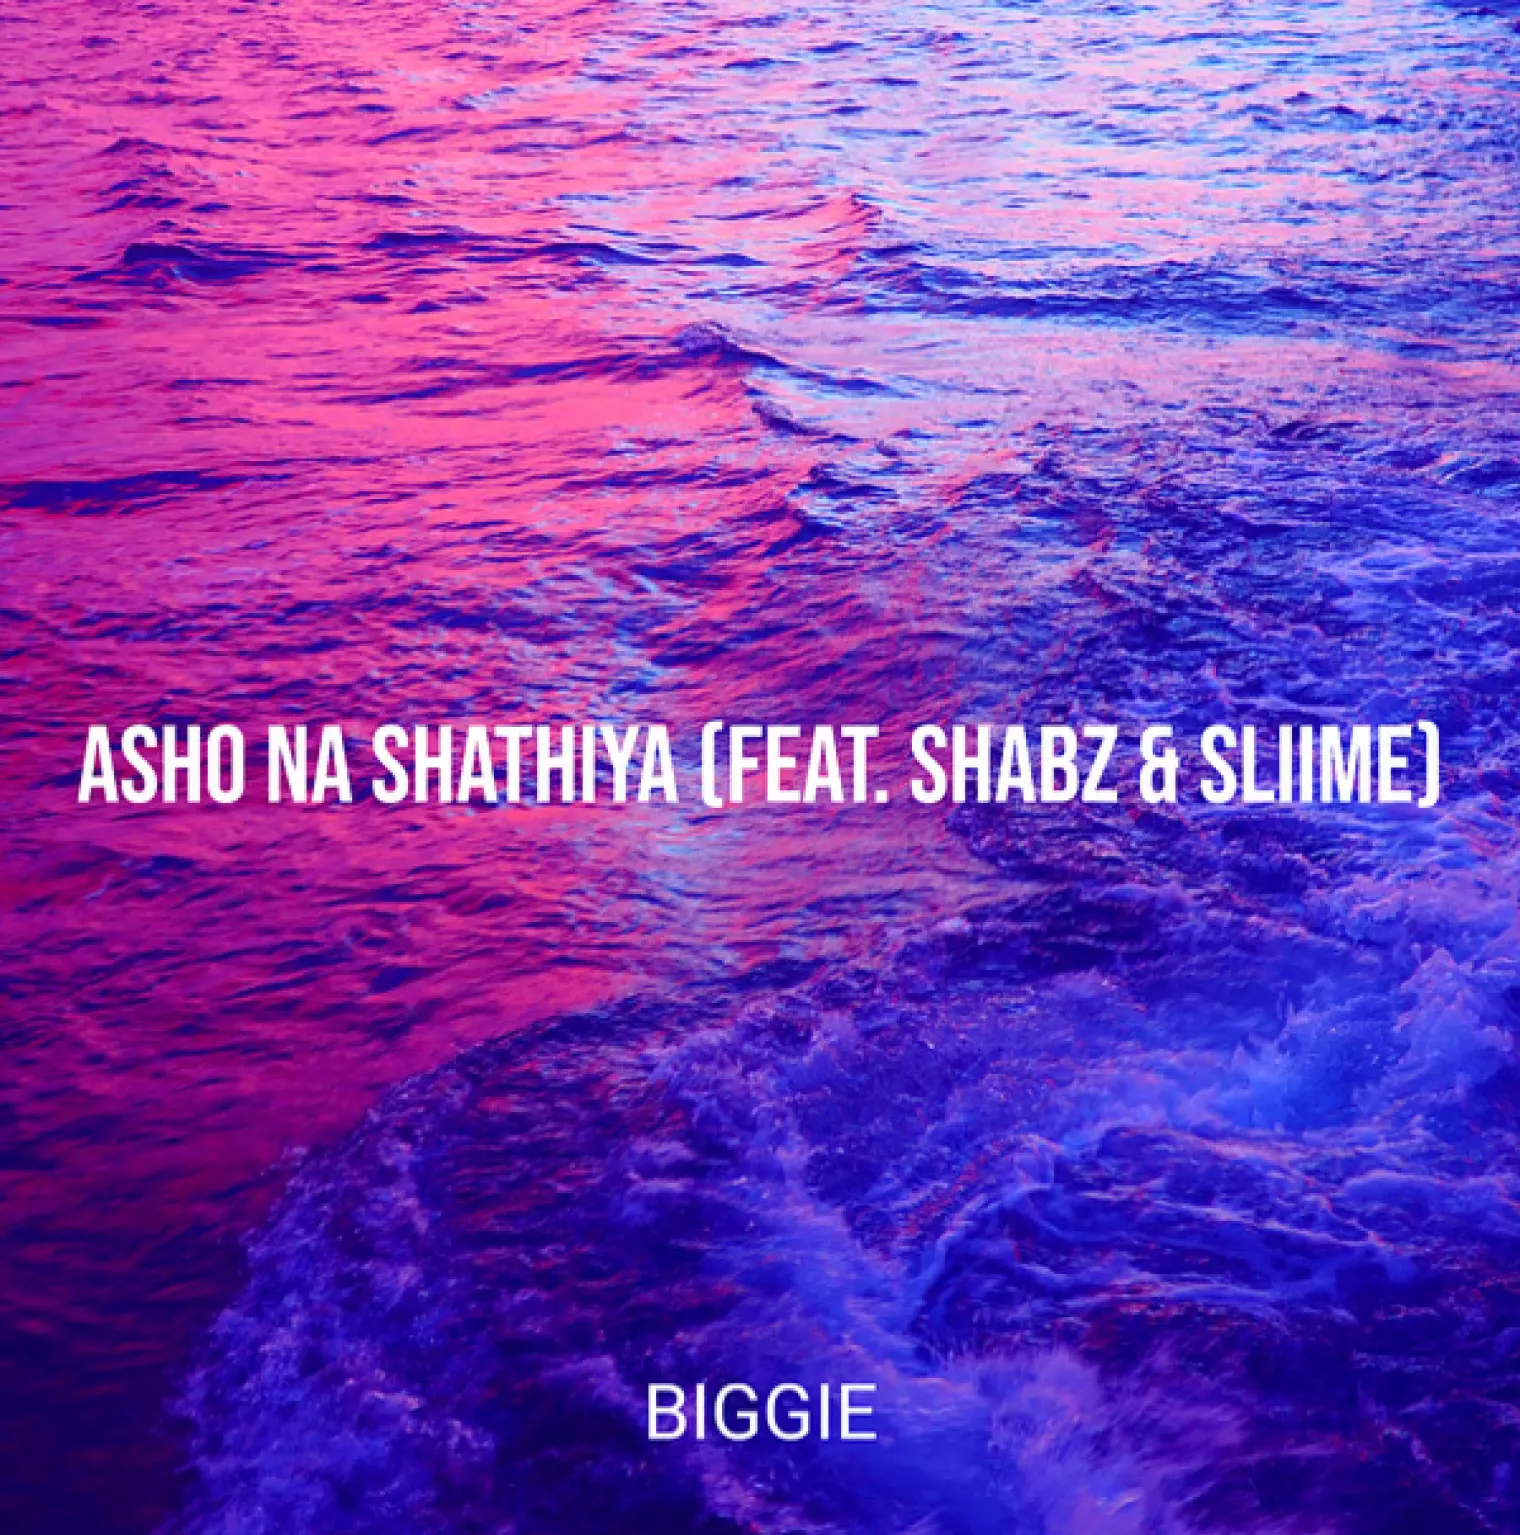 Asho Na Shathiya -  Biggie 